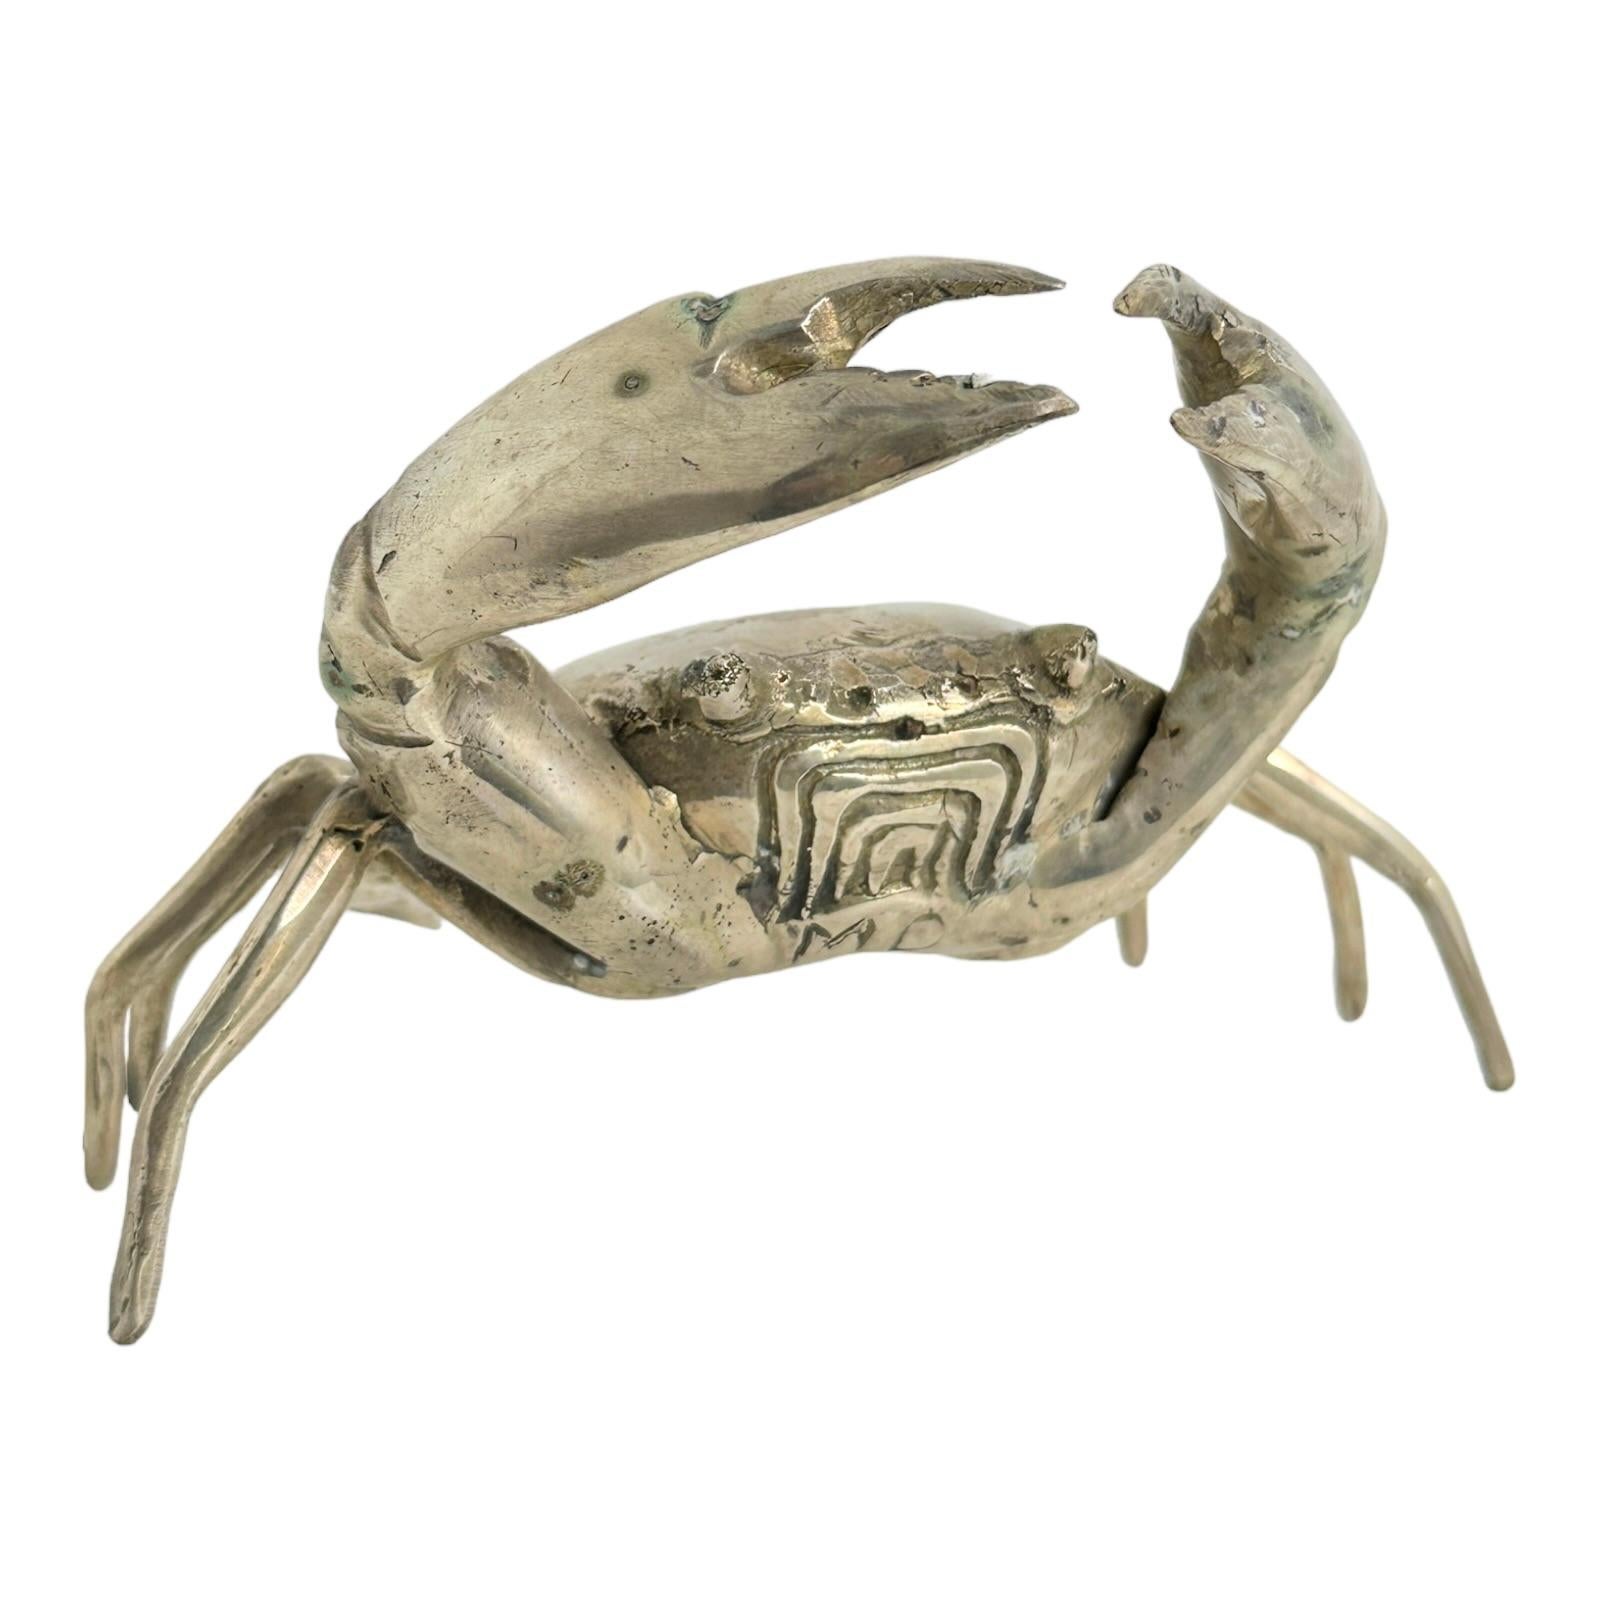 Cette statue de crabe en métal nickelé a probablement été fabriquée dans les années 1980 en Italie. Can ne peut pas dire le fabricant ou l'artiste et il n'est pas signé. Cette statue de crabe particulière est une belle pièce, elle peut être